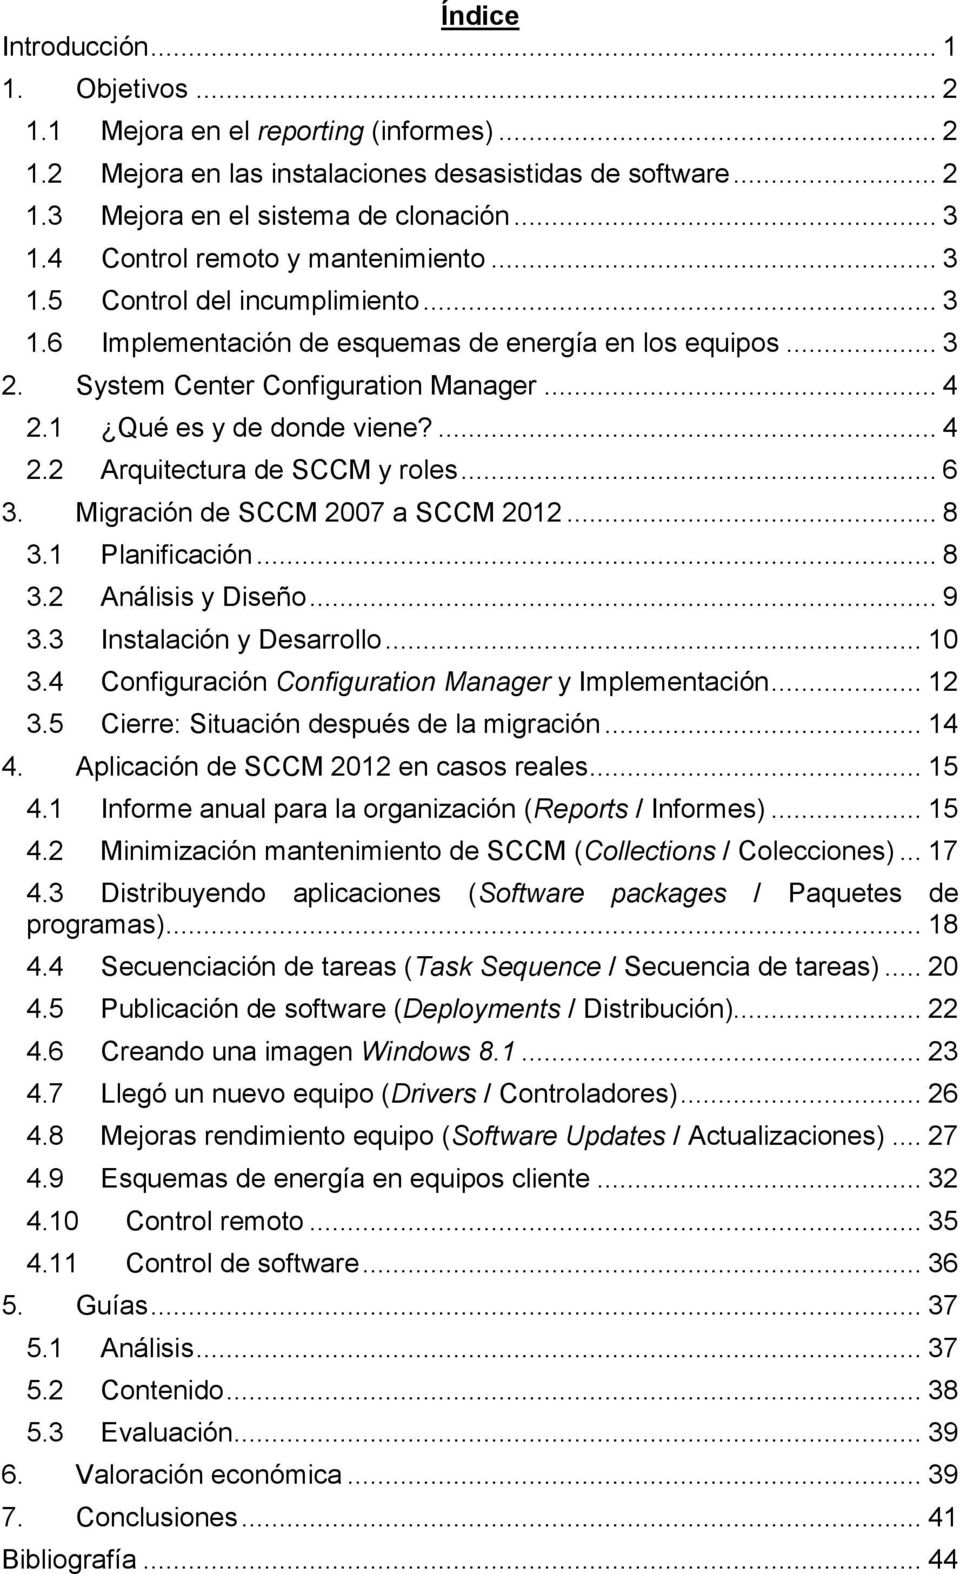 1 Qué es y de donde viene?... 4 2.2 Arquitectura de SCCM y roles... 6 3. Migración de SCCM 2007 a SCCM 2012... 8 3.1 Planificación... 8 3.2 Análisis y Diseño... 9 3.3 Instalación y Desarrollo... 10 3.